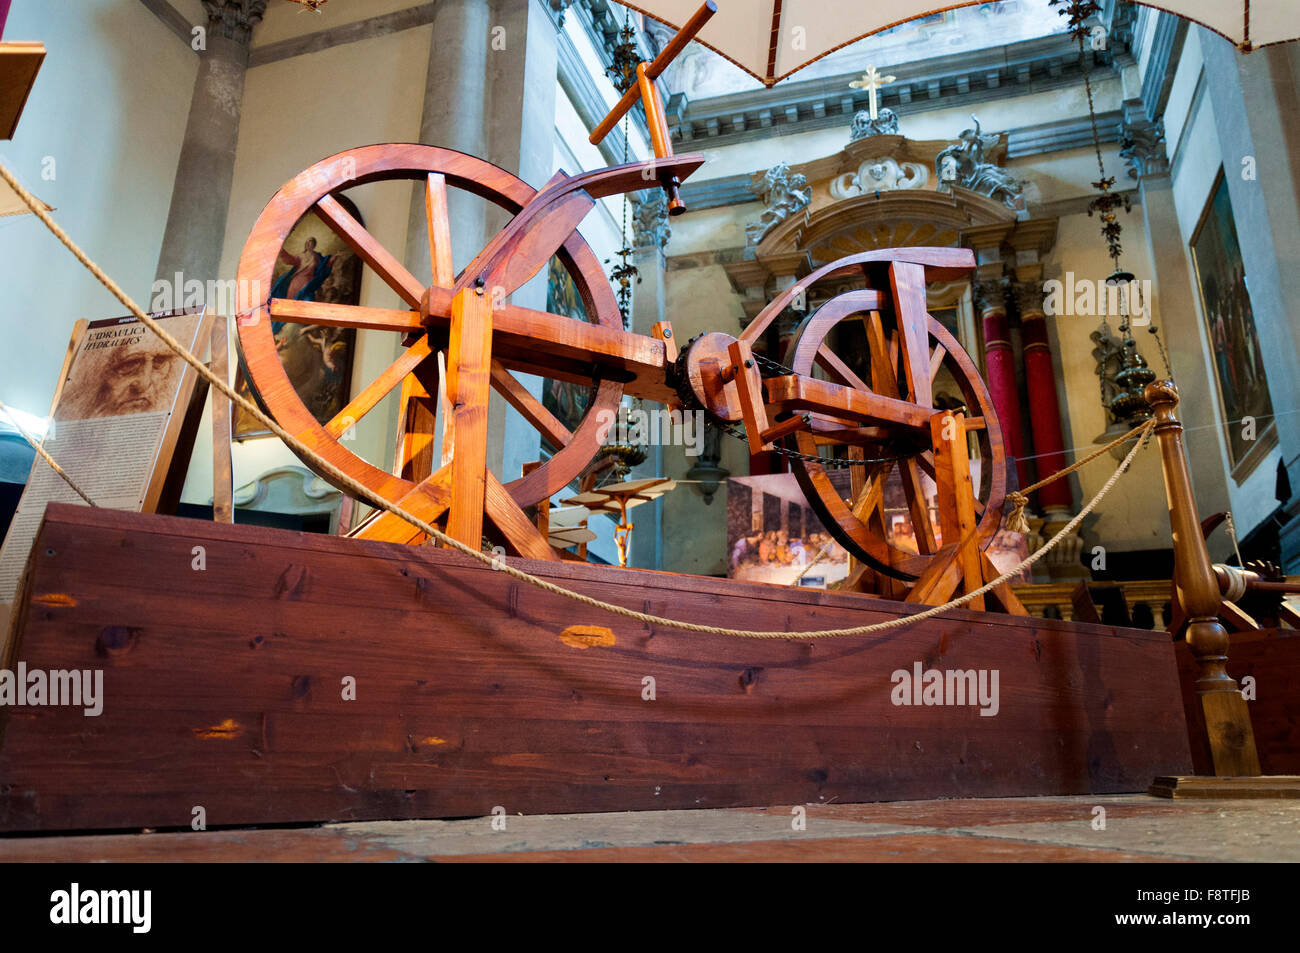 Exposition de machines Da Vinci, location illustré ici, Venise, Italie Banque D'Images